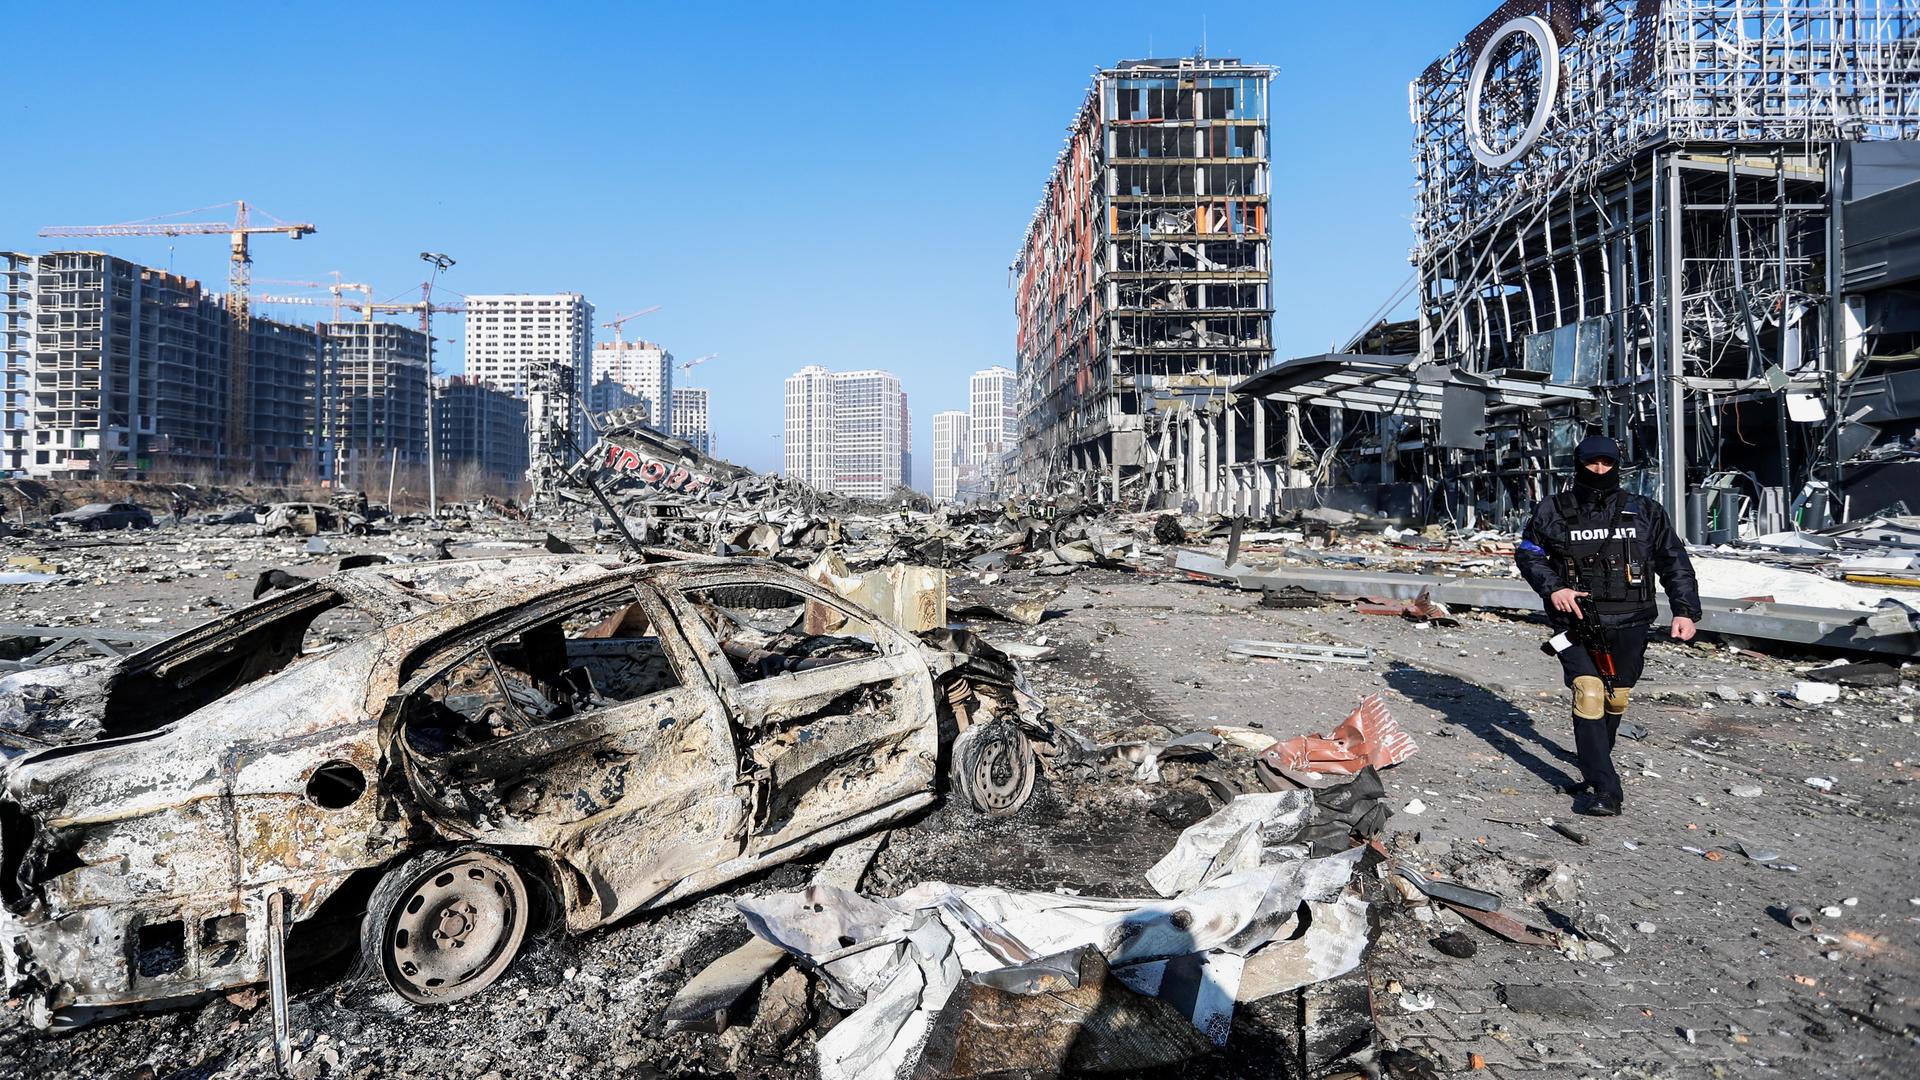 Die ukrainische Stadt Kiew nach einem russischen Luftschlag. Die Straßenflucht ist völlig zerstört, im Vordergrund ein ausgebranntes Auto. 